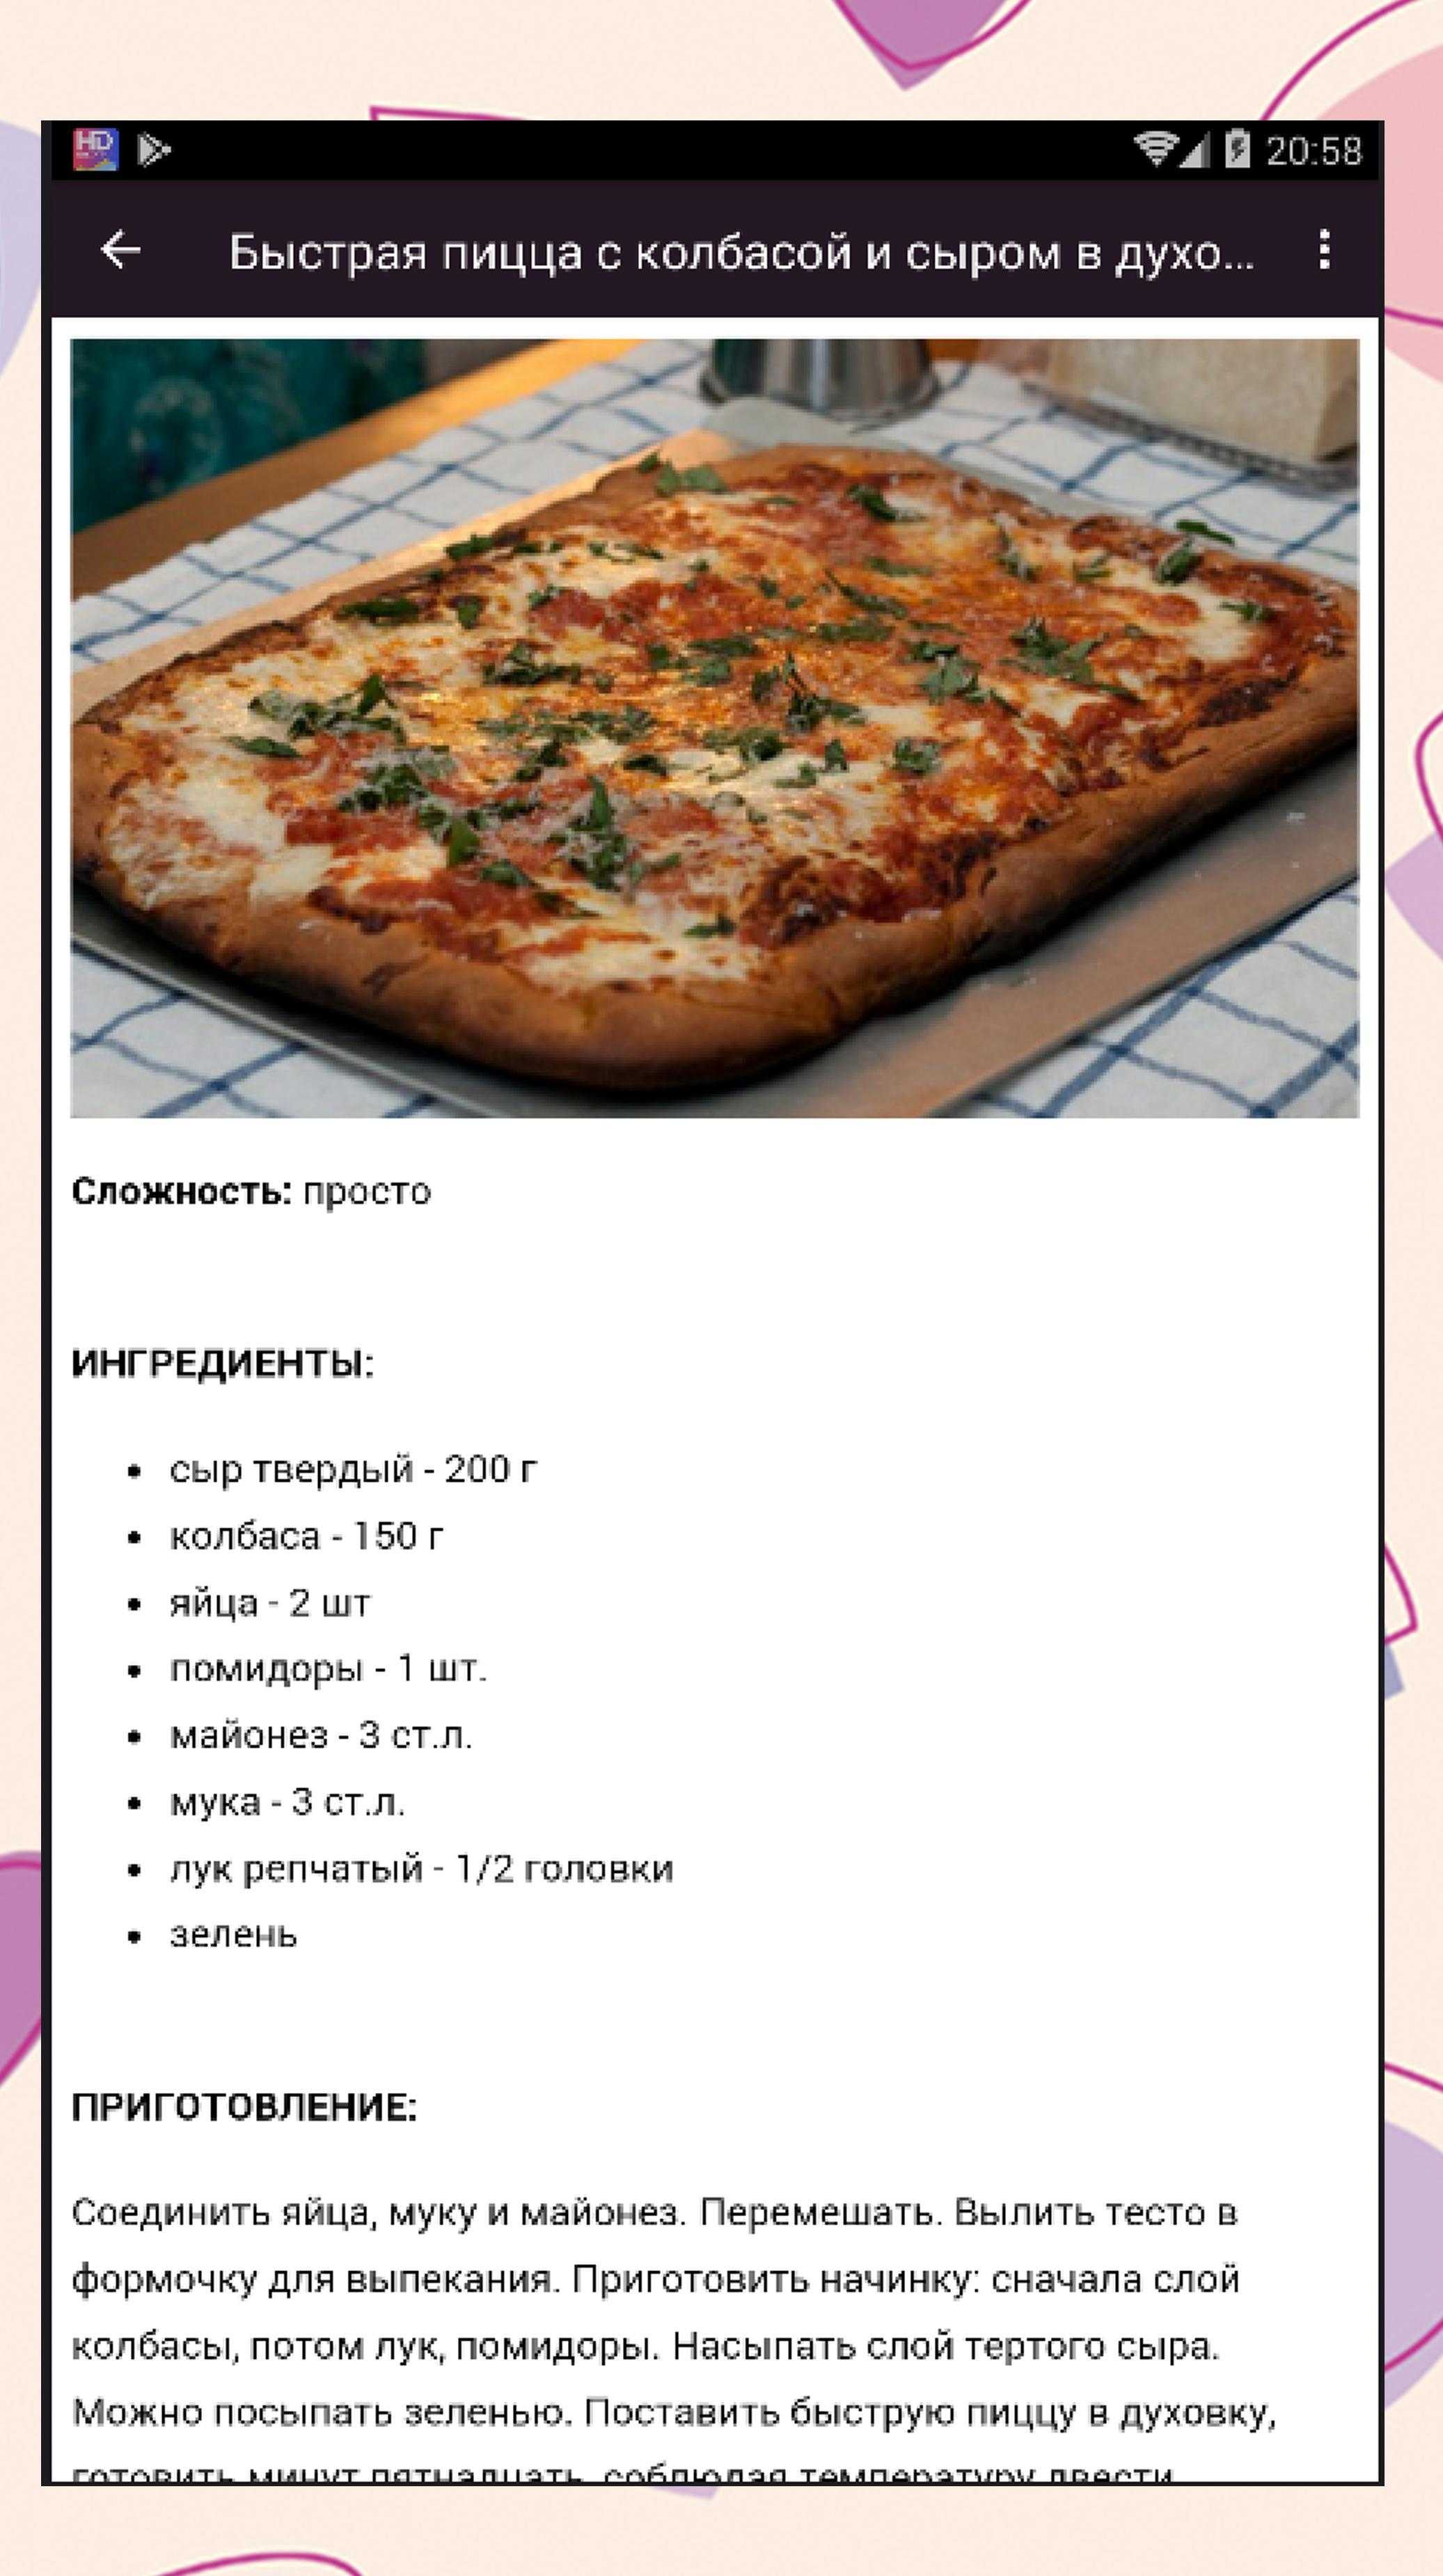 Простой рецепт теста на пиццу в духовке. Рецепт пиццы. Вкусное тесто для пиццы. Пицца в домашних условиях. Рецепты пиццы для пиццерии.